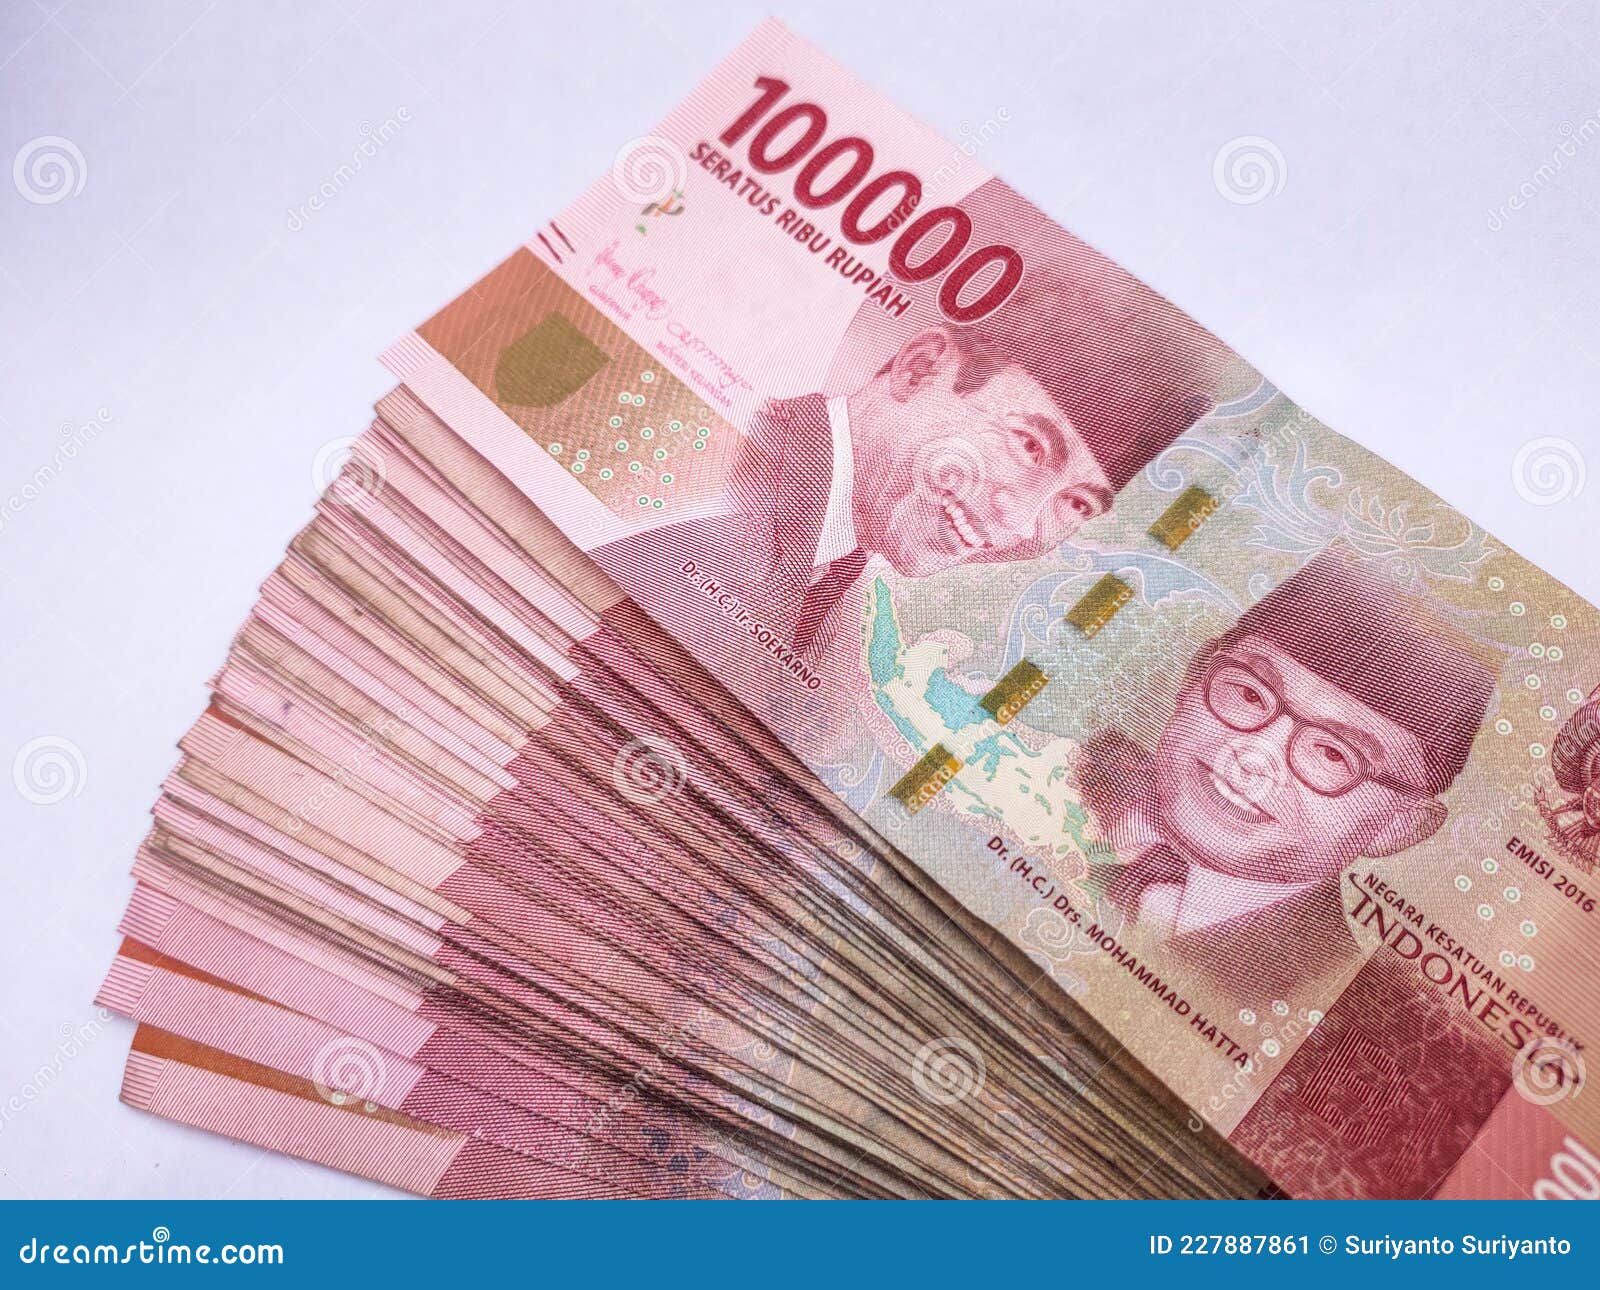 外币～印尼2000盾-价格:10元-se80502768-外国钱币-零售-7788收藏__收藏热线